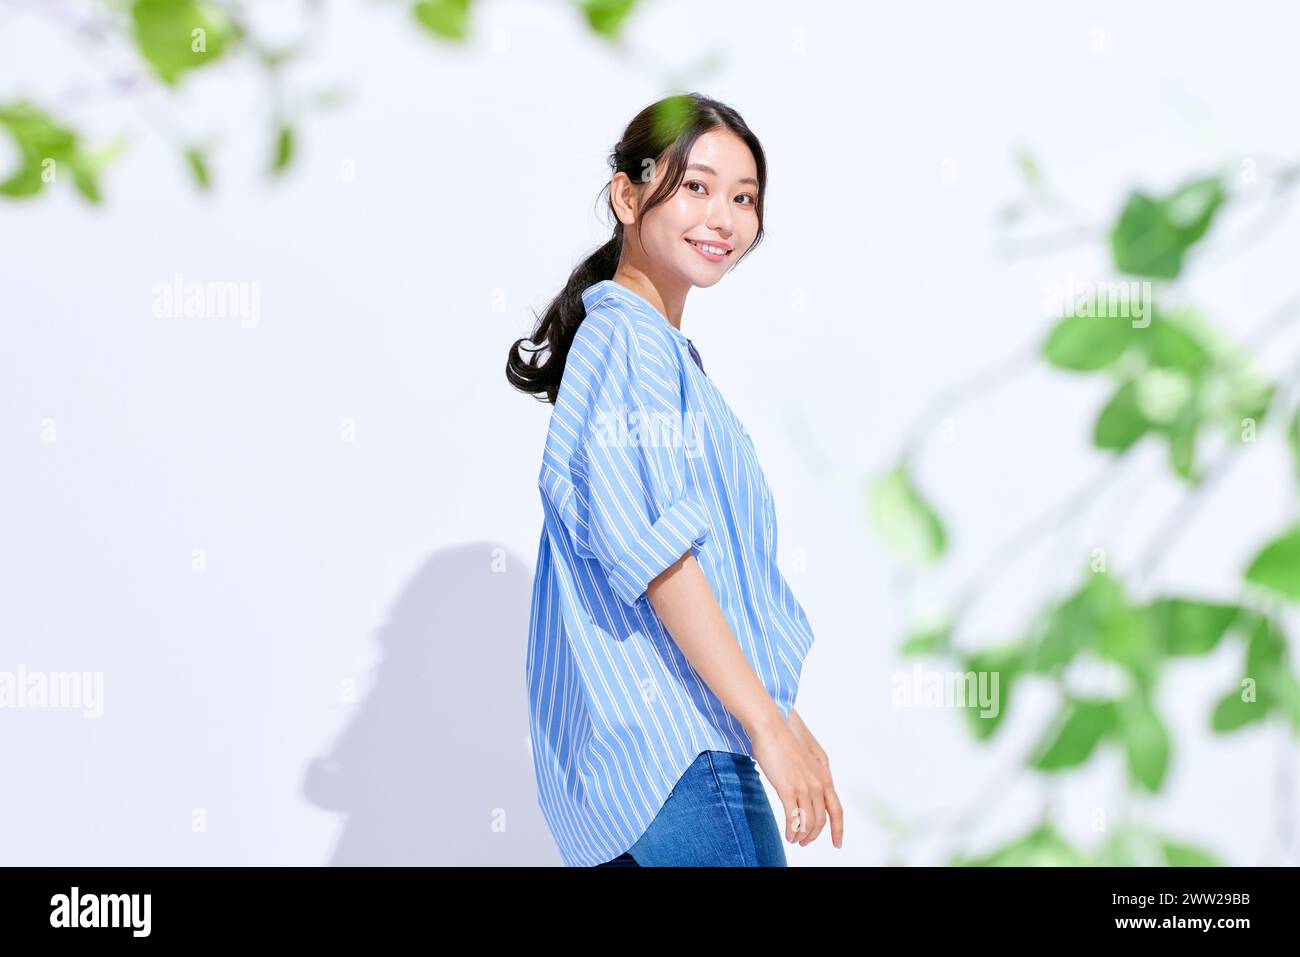 Una donna in camicia a righe blu e bianca davanti a foglie verdi Foto Stock